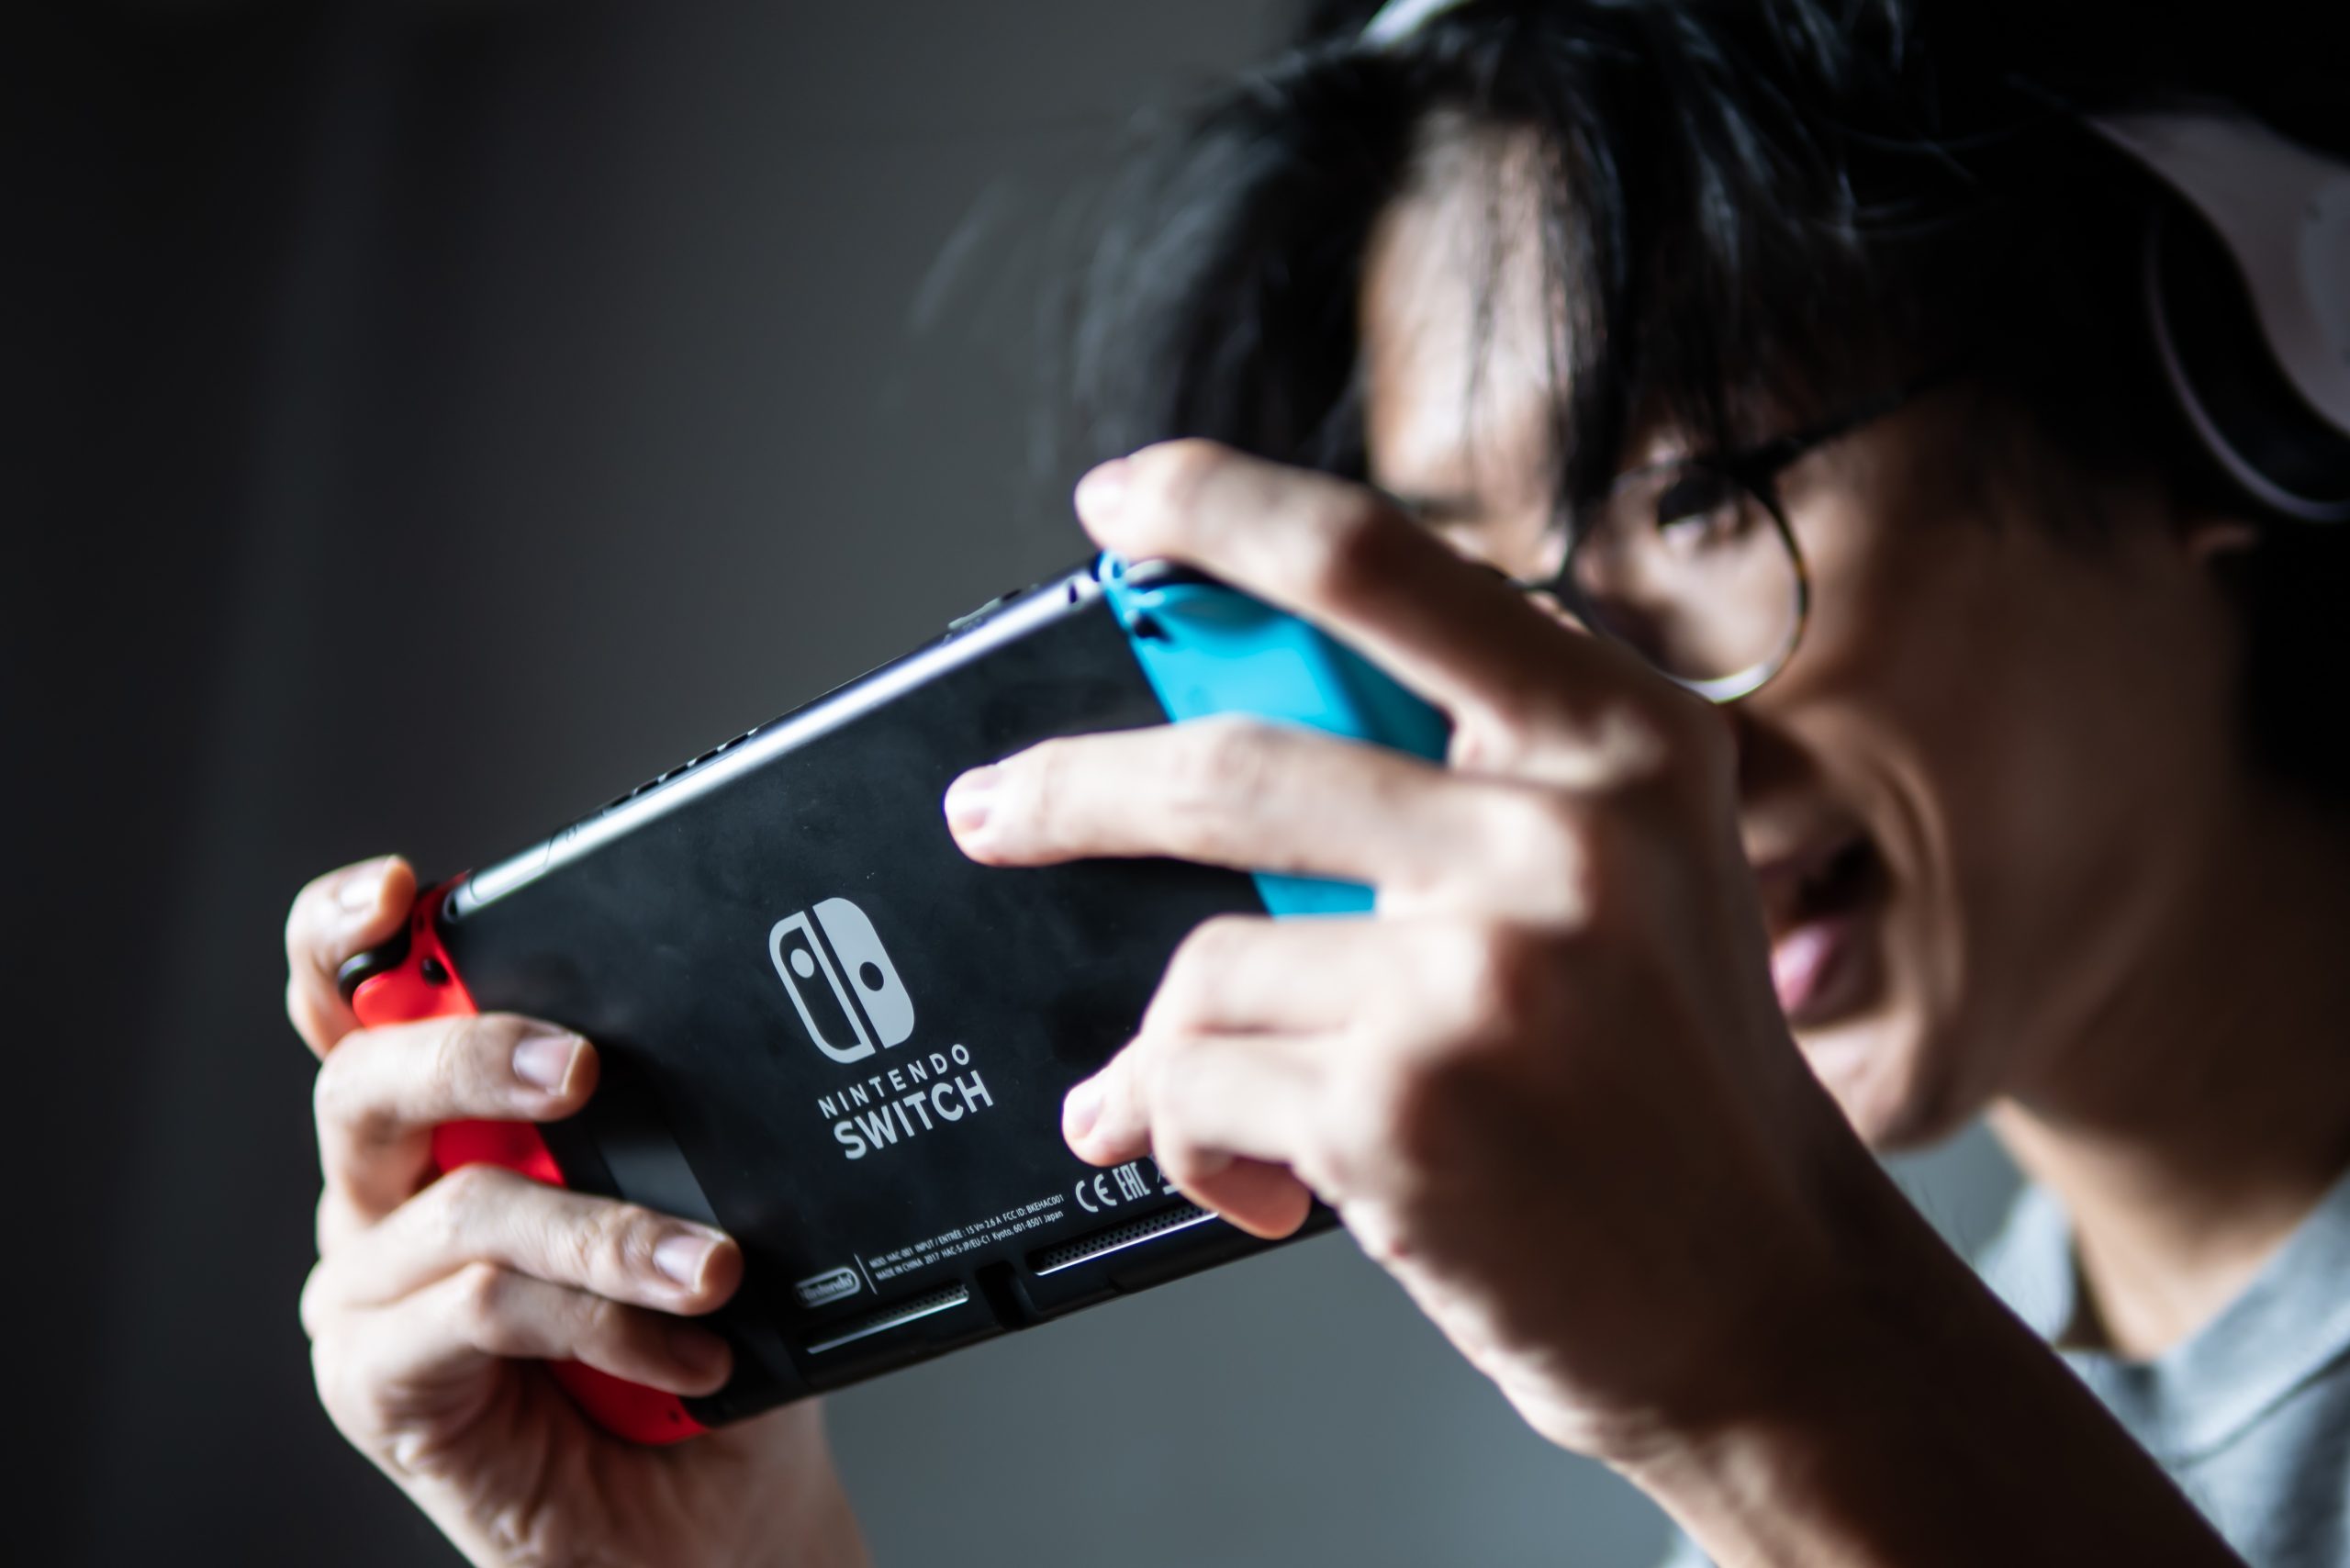 Imagem mostra jovem se divertindo com um Nintendo Switch em mãos